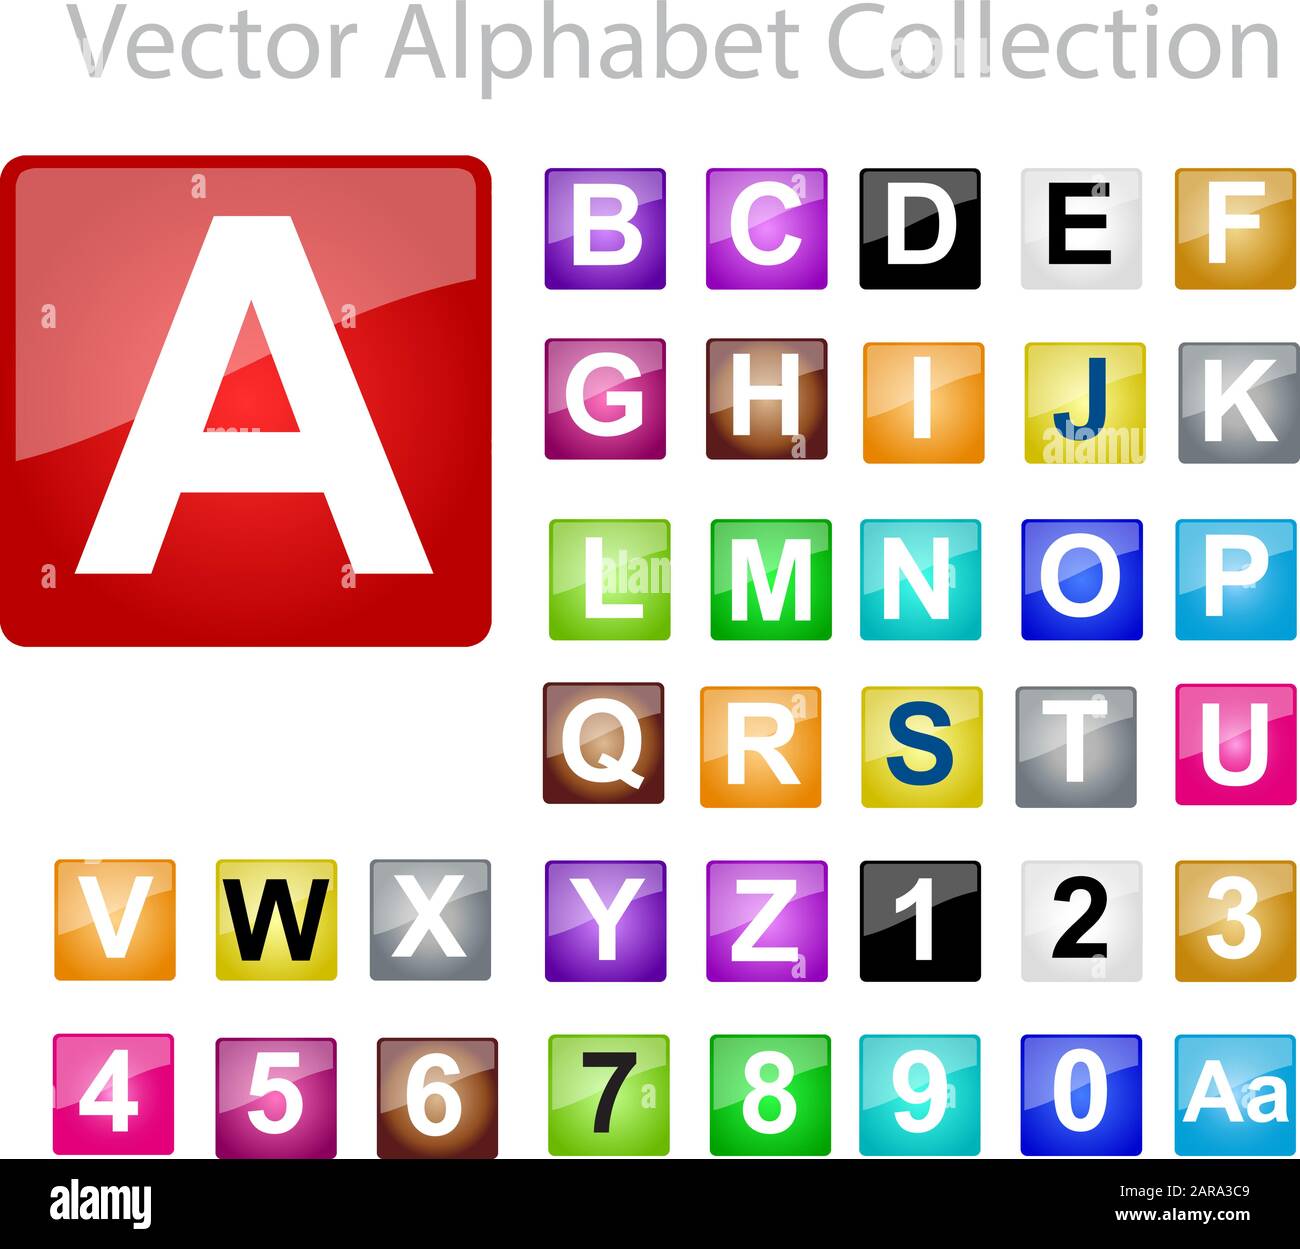 Vector Alphabet Collection Stock Vector